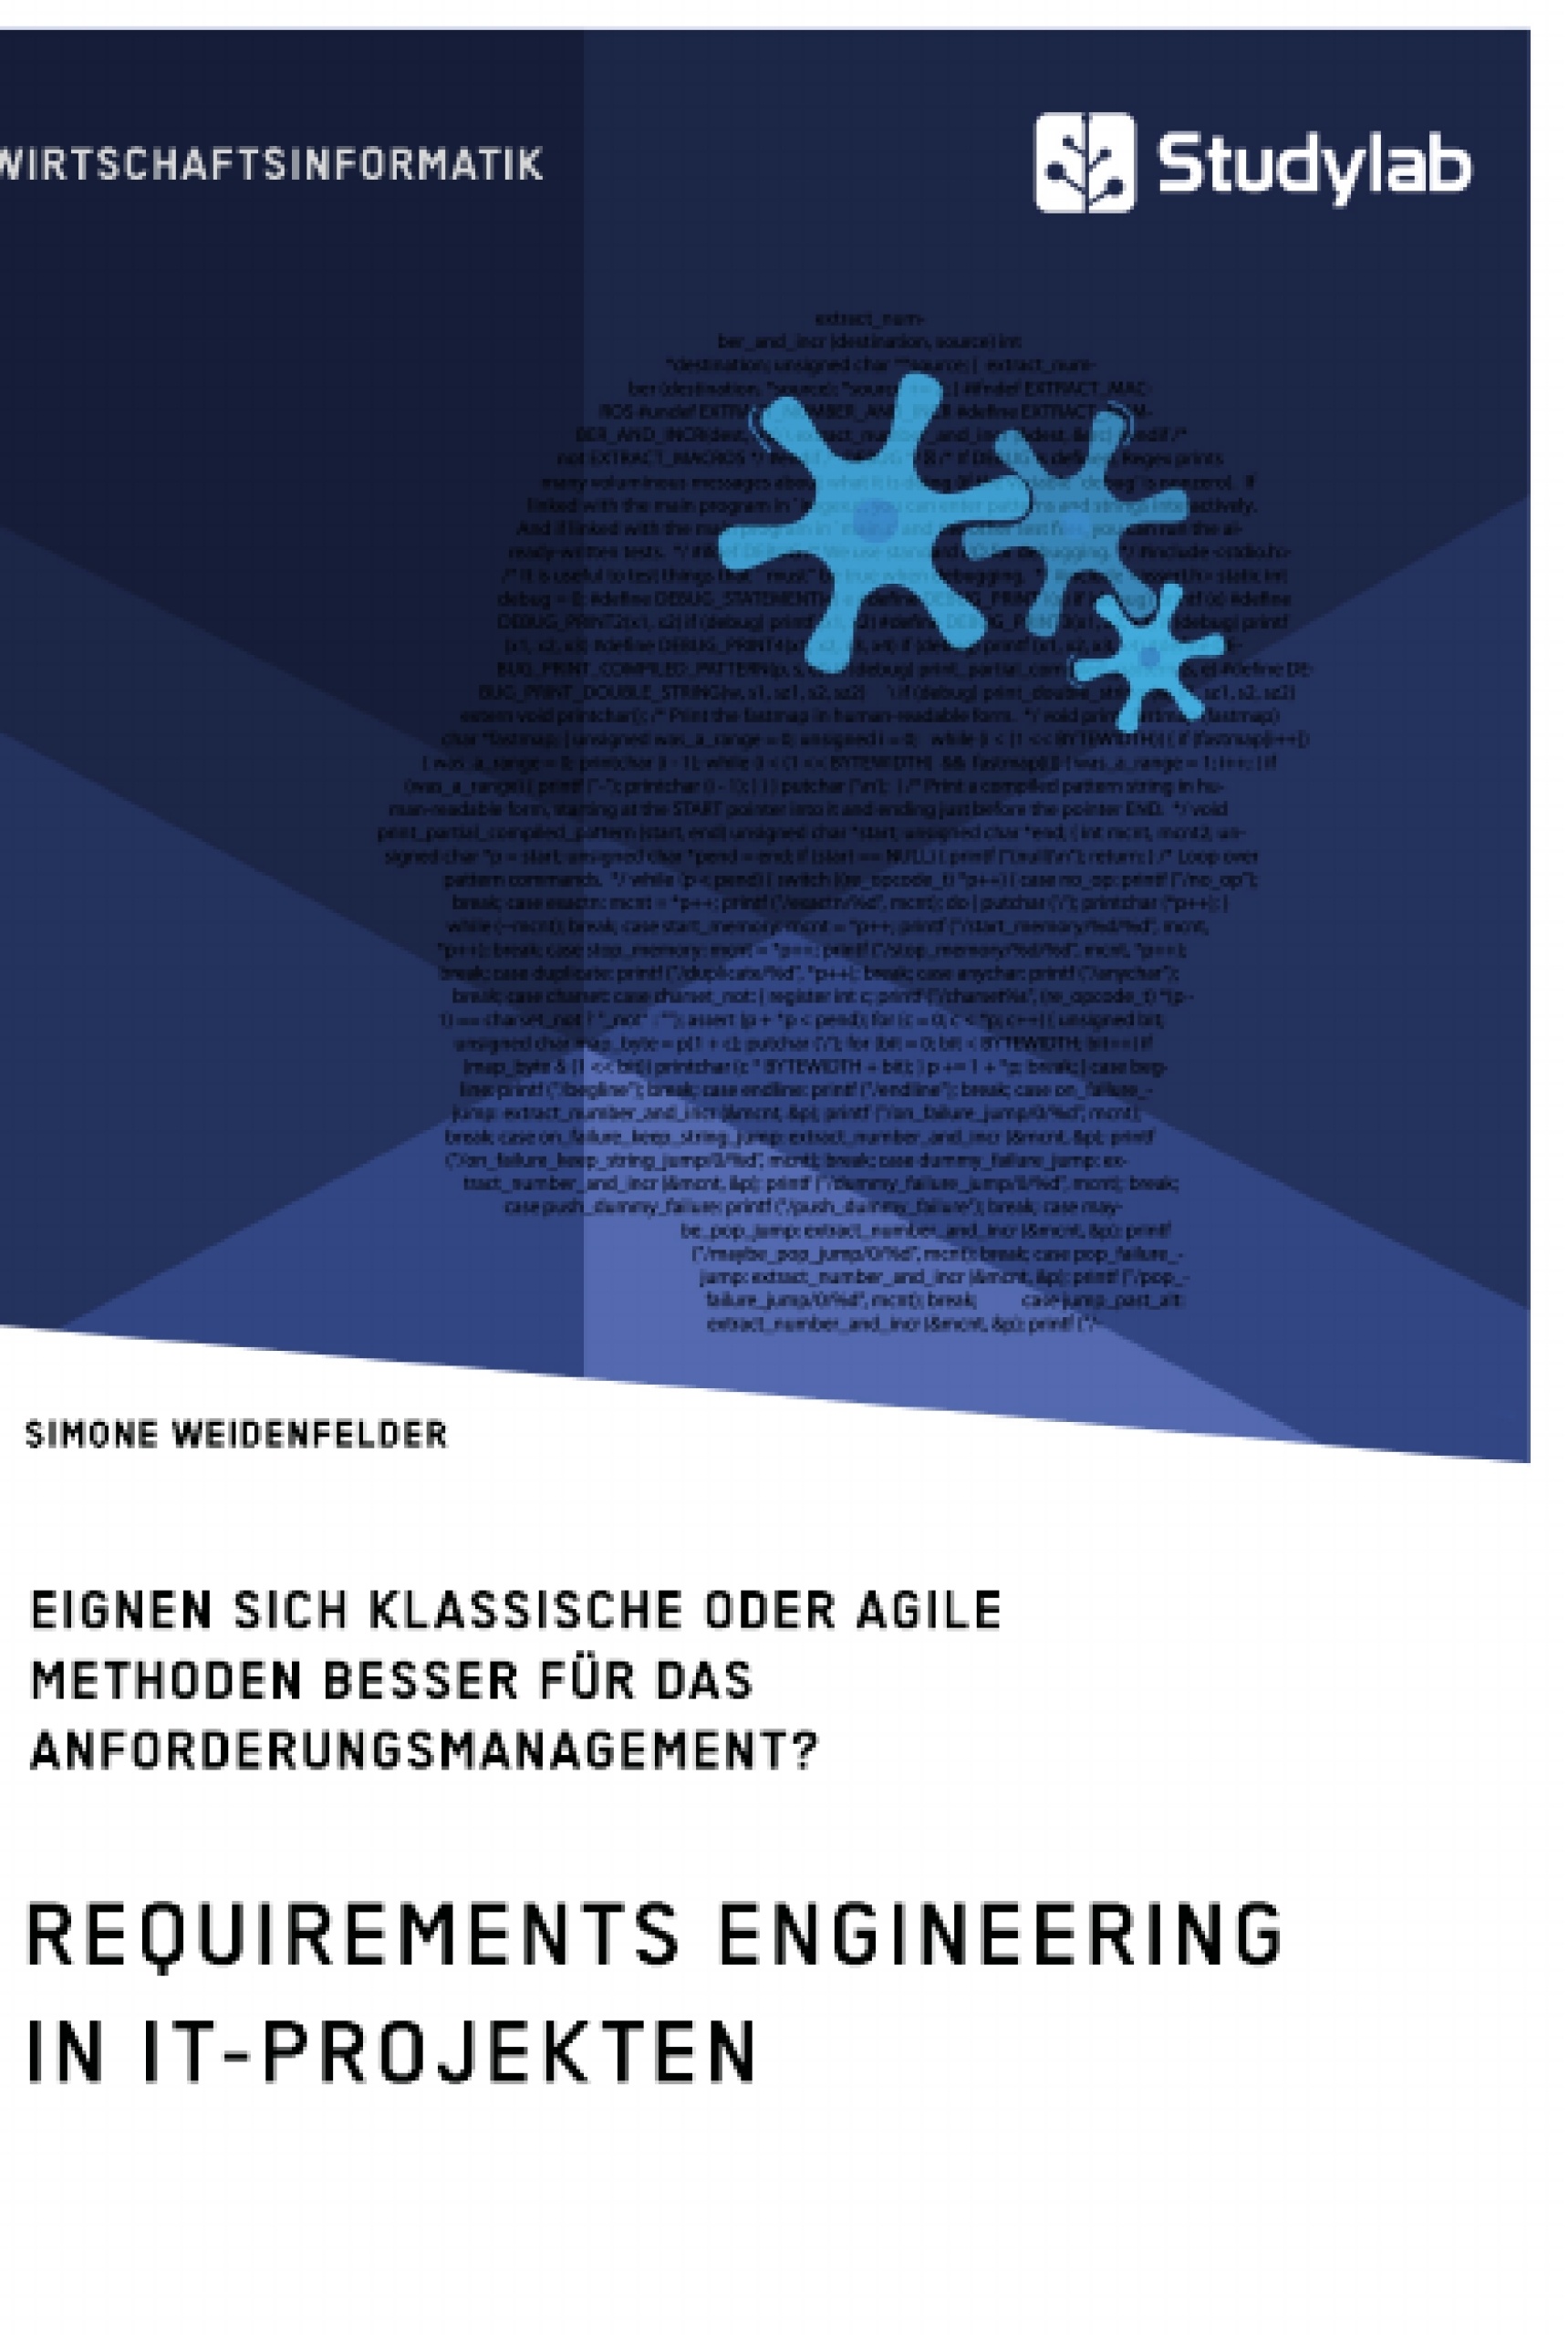 Título: Requirements Engineering in IT-Projekten. Eignen sich klassische oder agile Methoden besser für das Anforderungsmanagement?